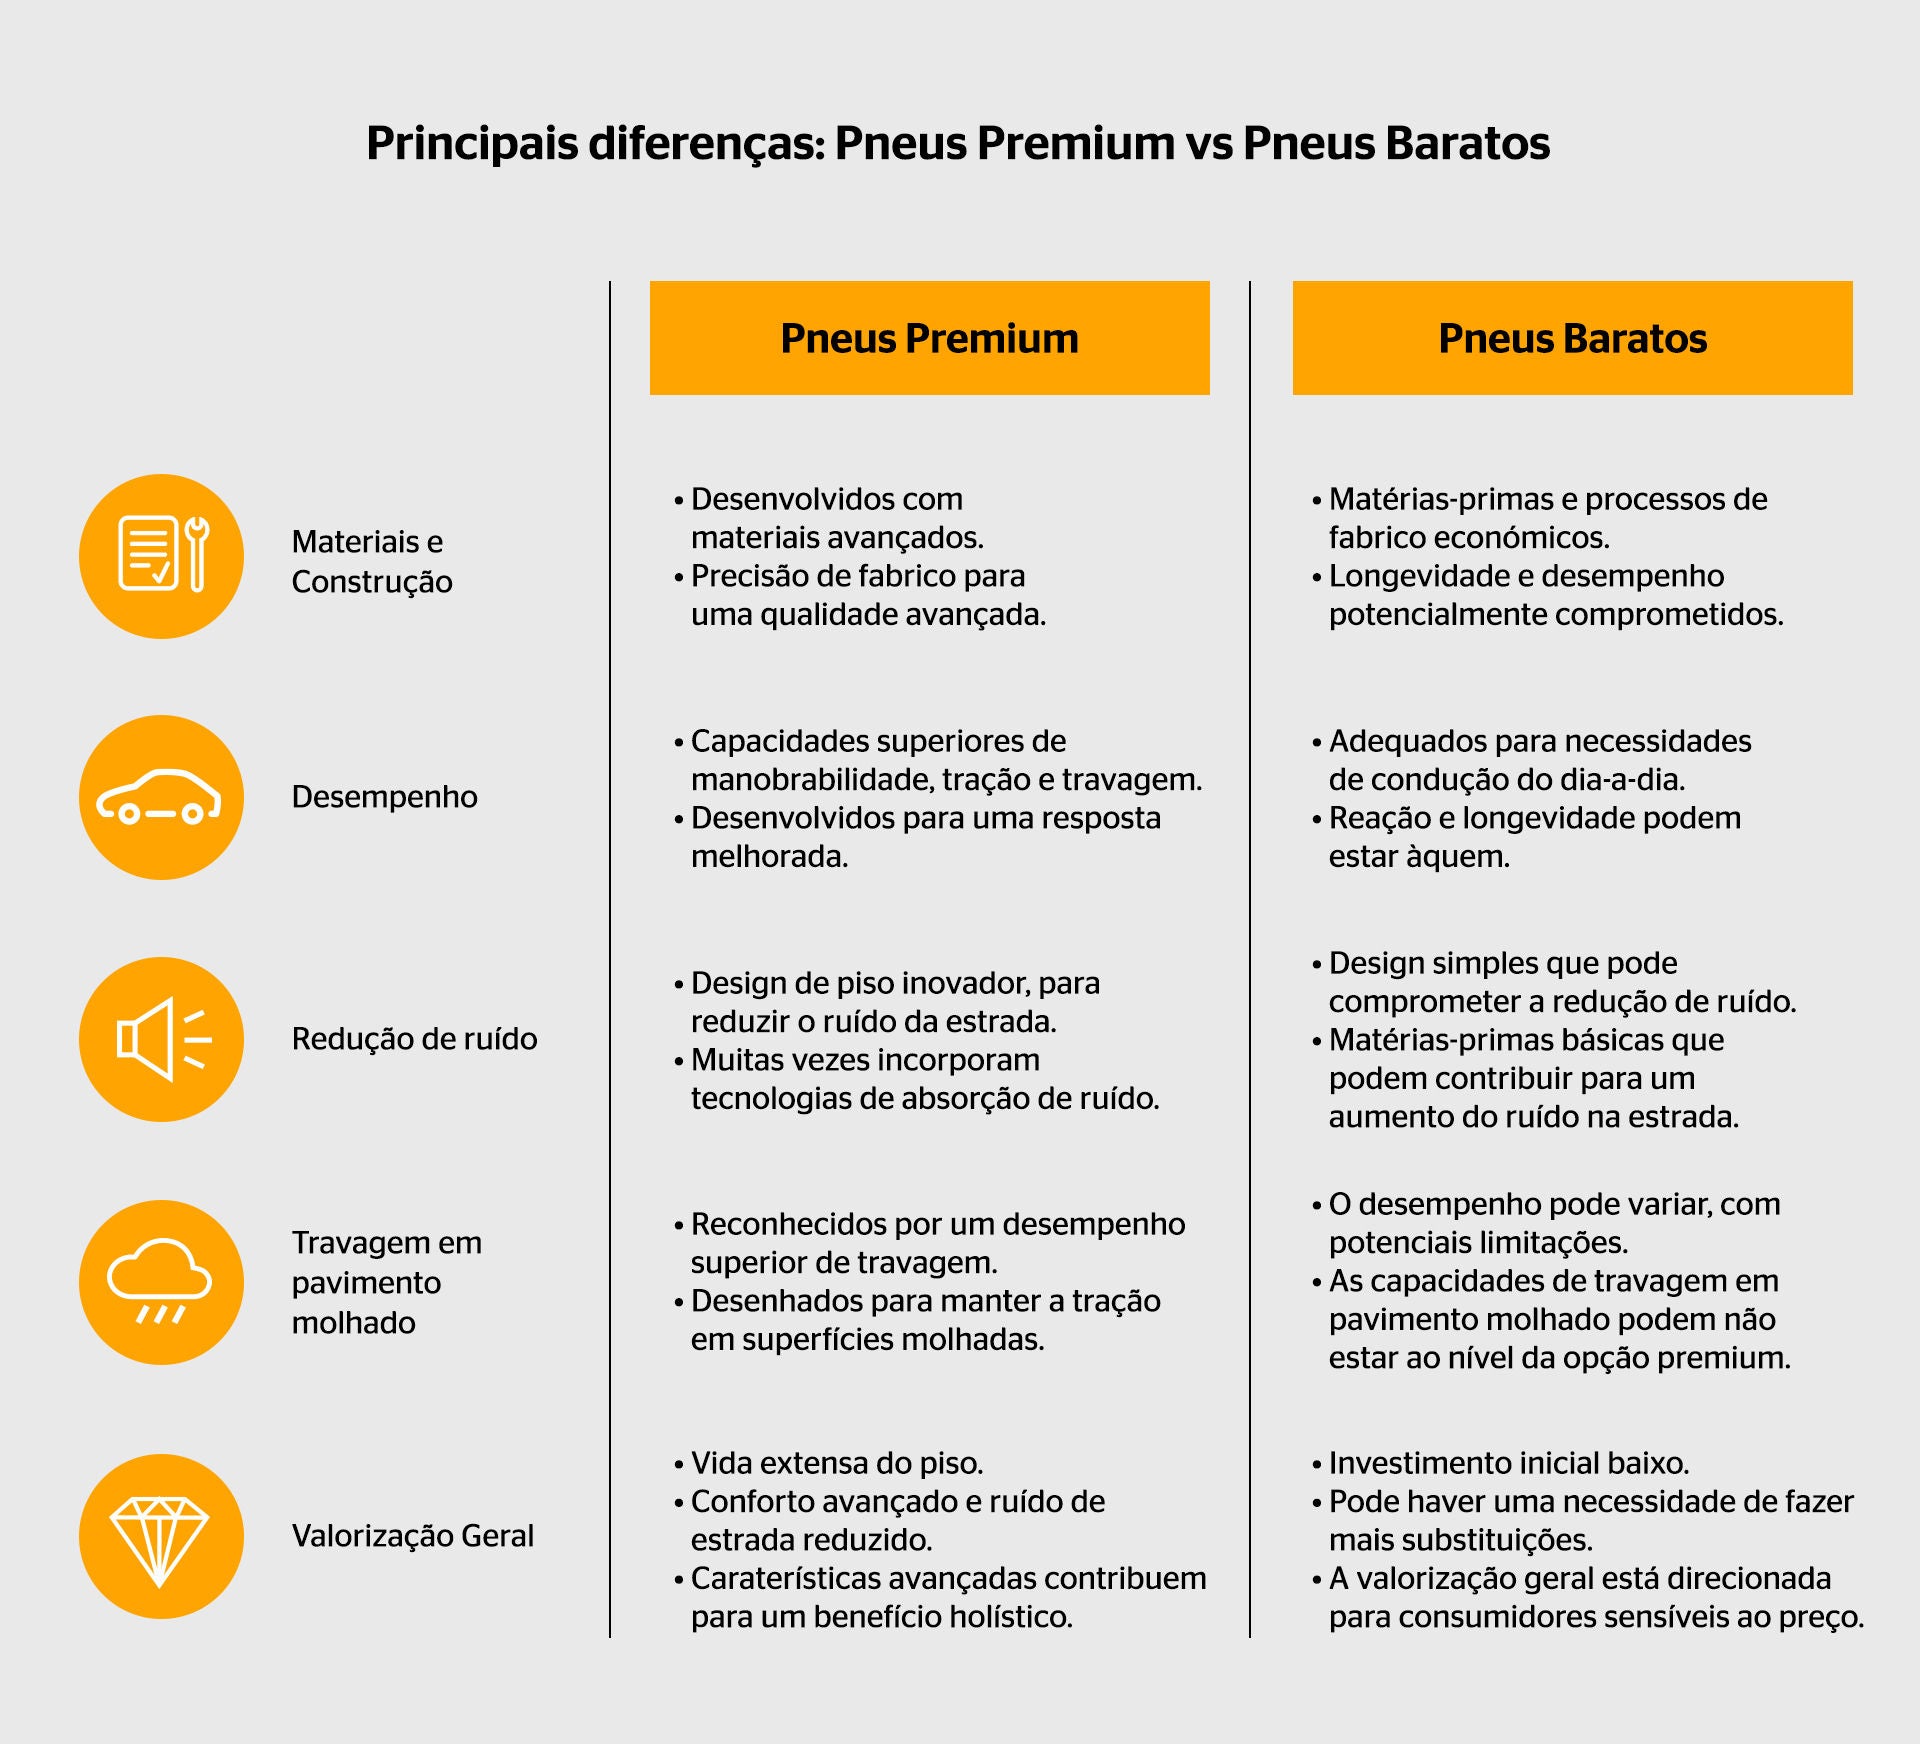 Principais diferenças entre Pneus Premium e Pneus Baratos